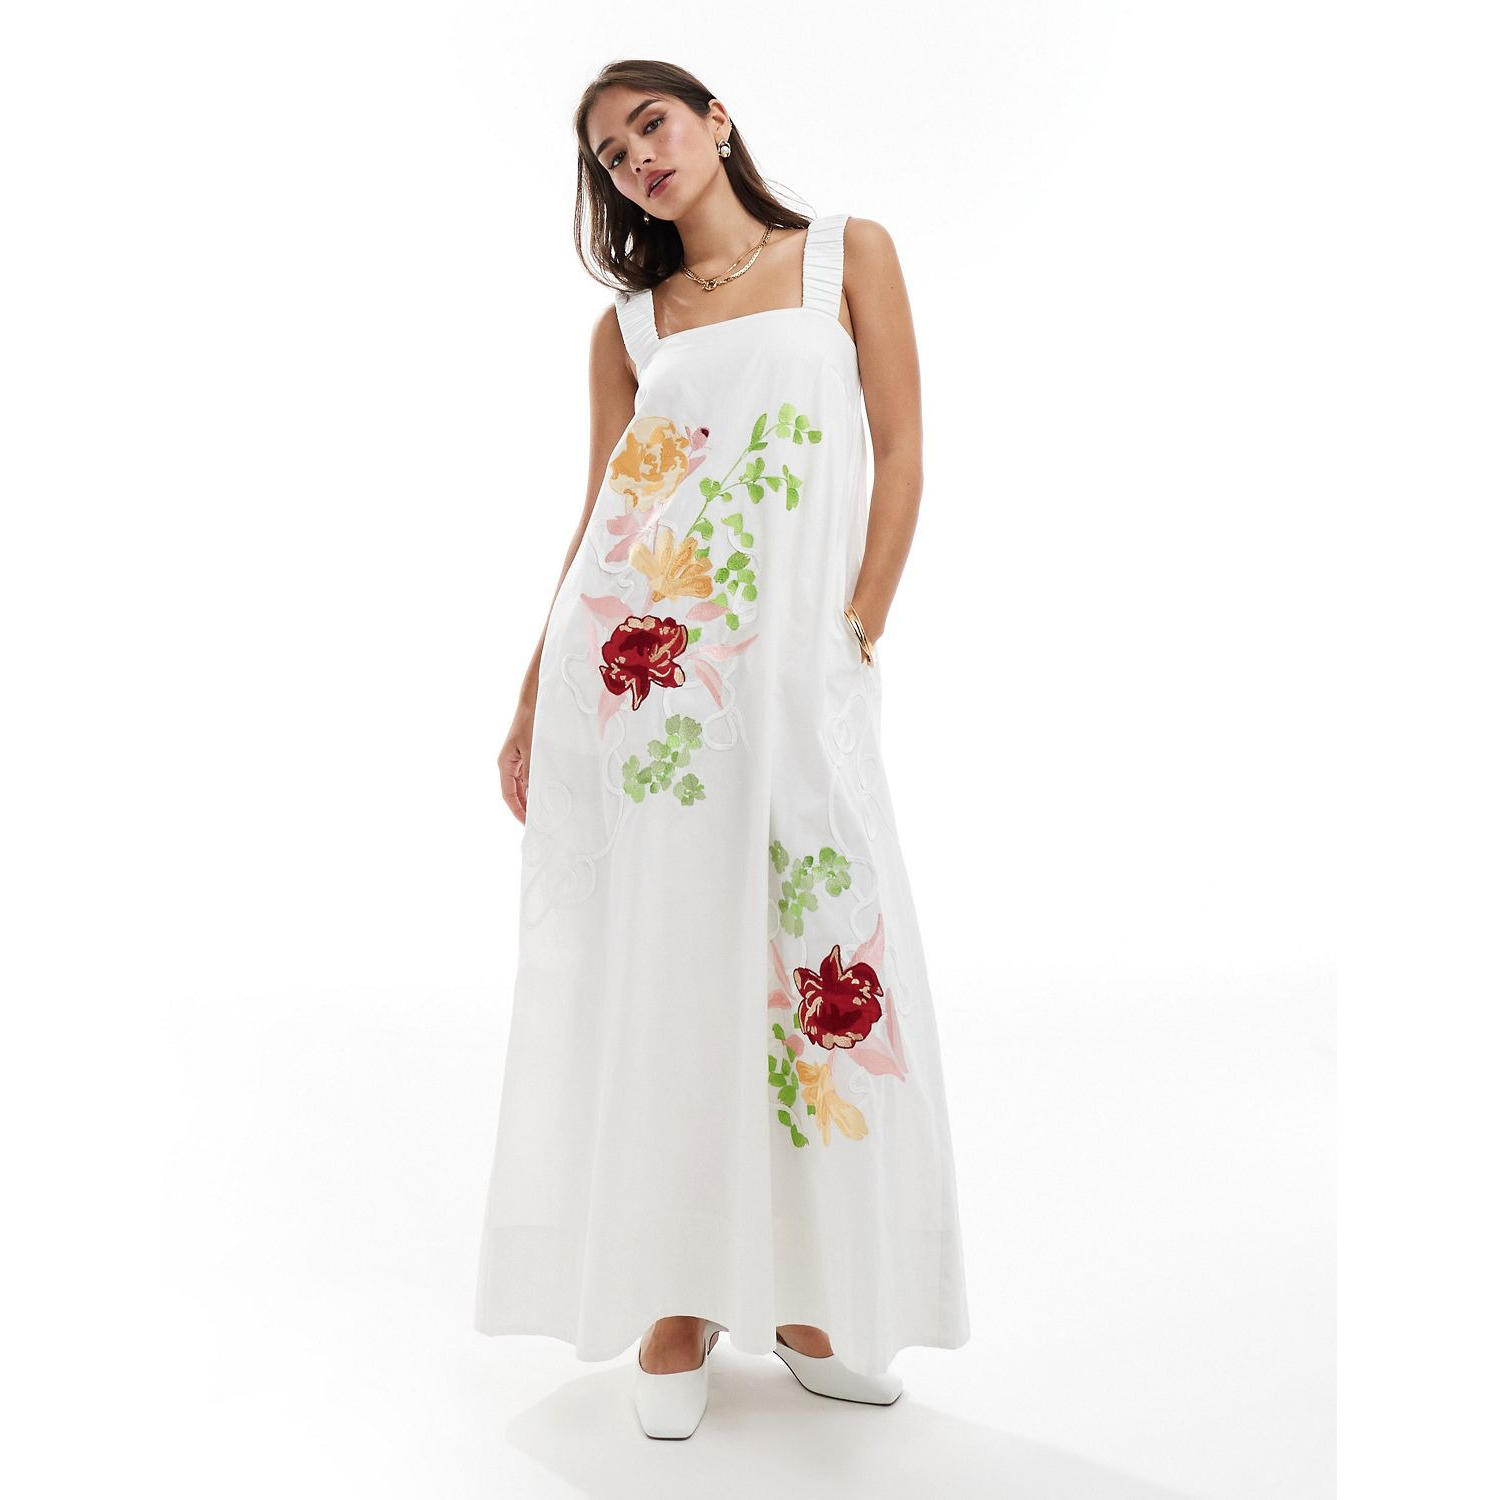 Платье Asos Edition Embroidered Floral Square Neck Midi, белый детское платье с бантом для первого дня рождения белое платье принцессы с цветочной вышивкой для первого причастия